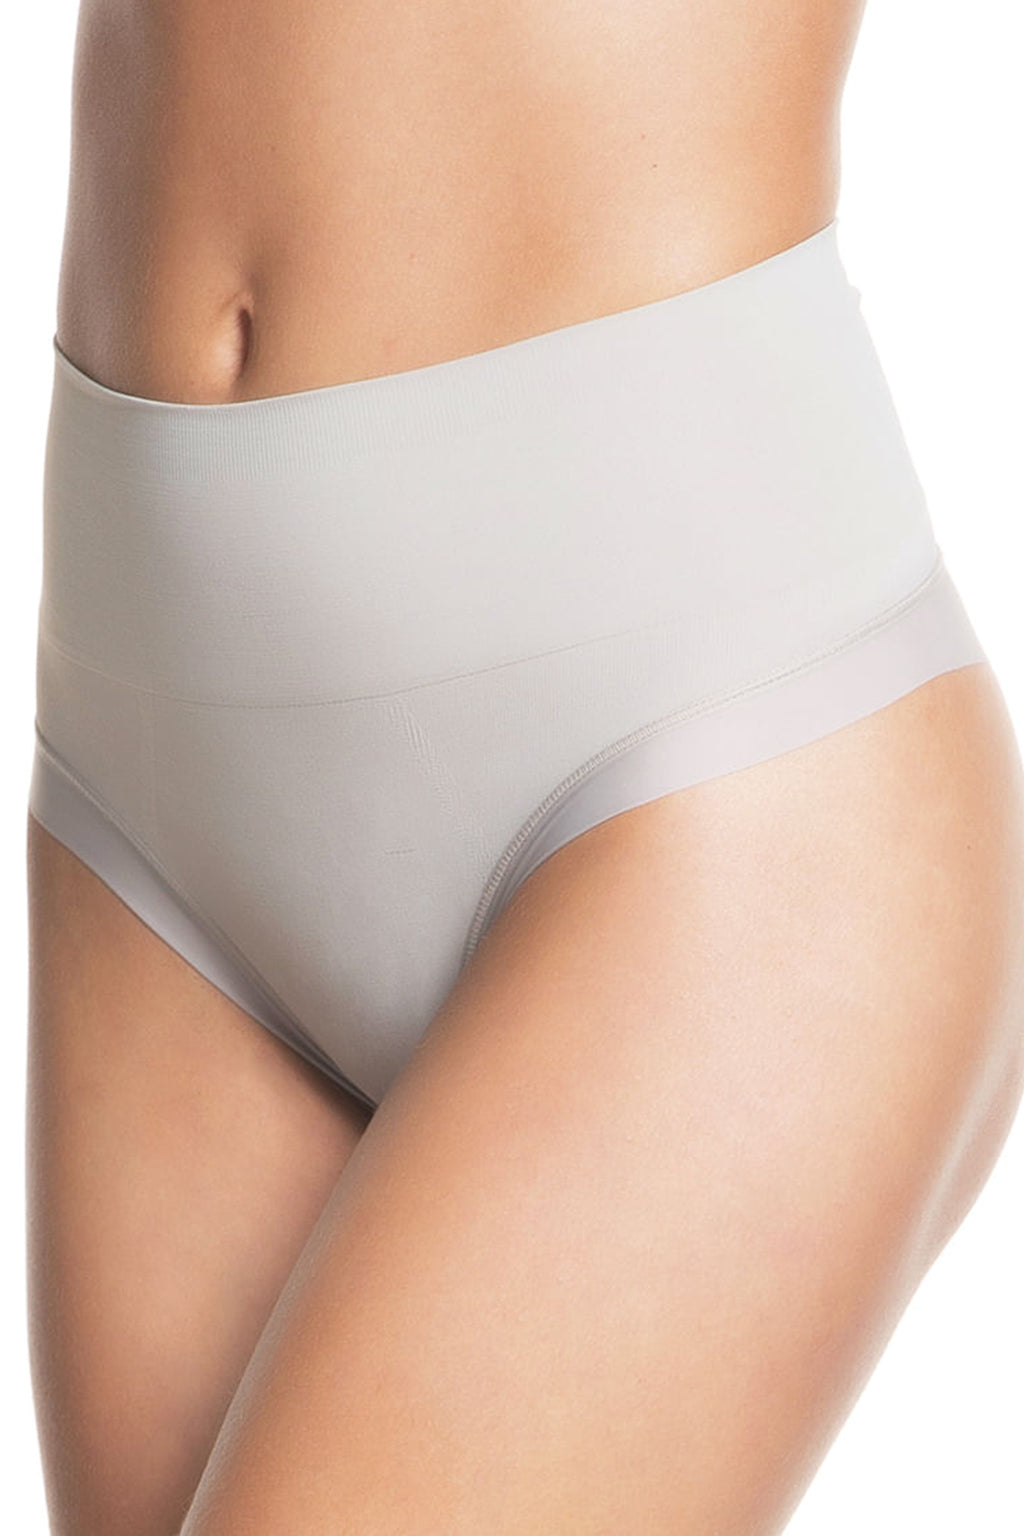 Womens White Cotton Control Shapewear Underwear Briefs